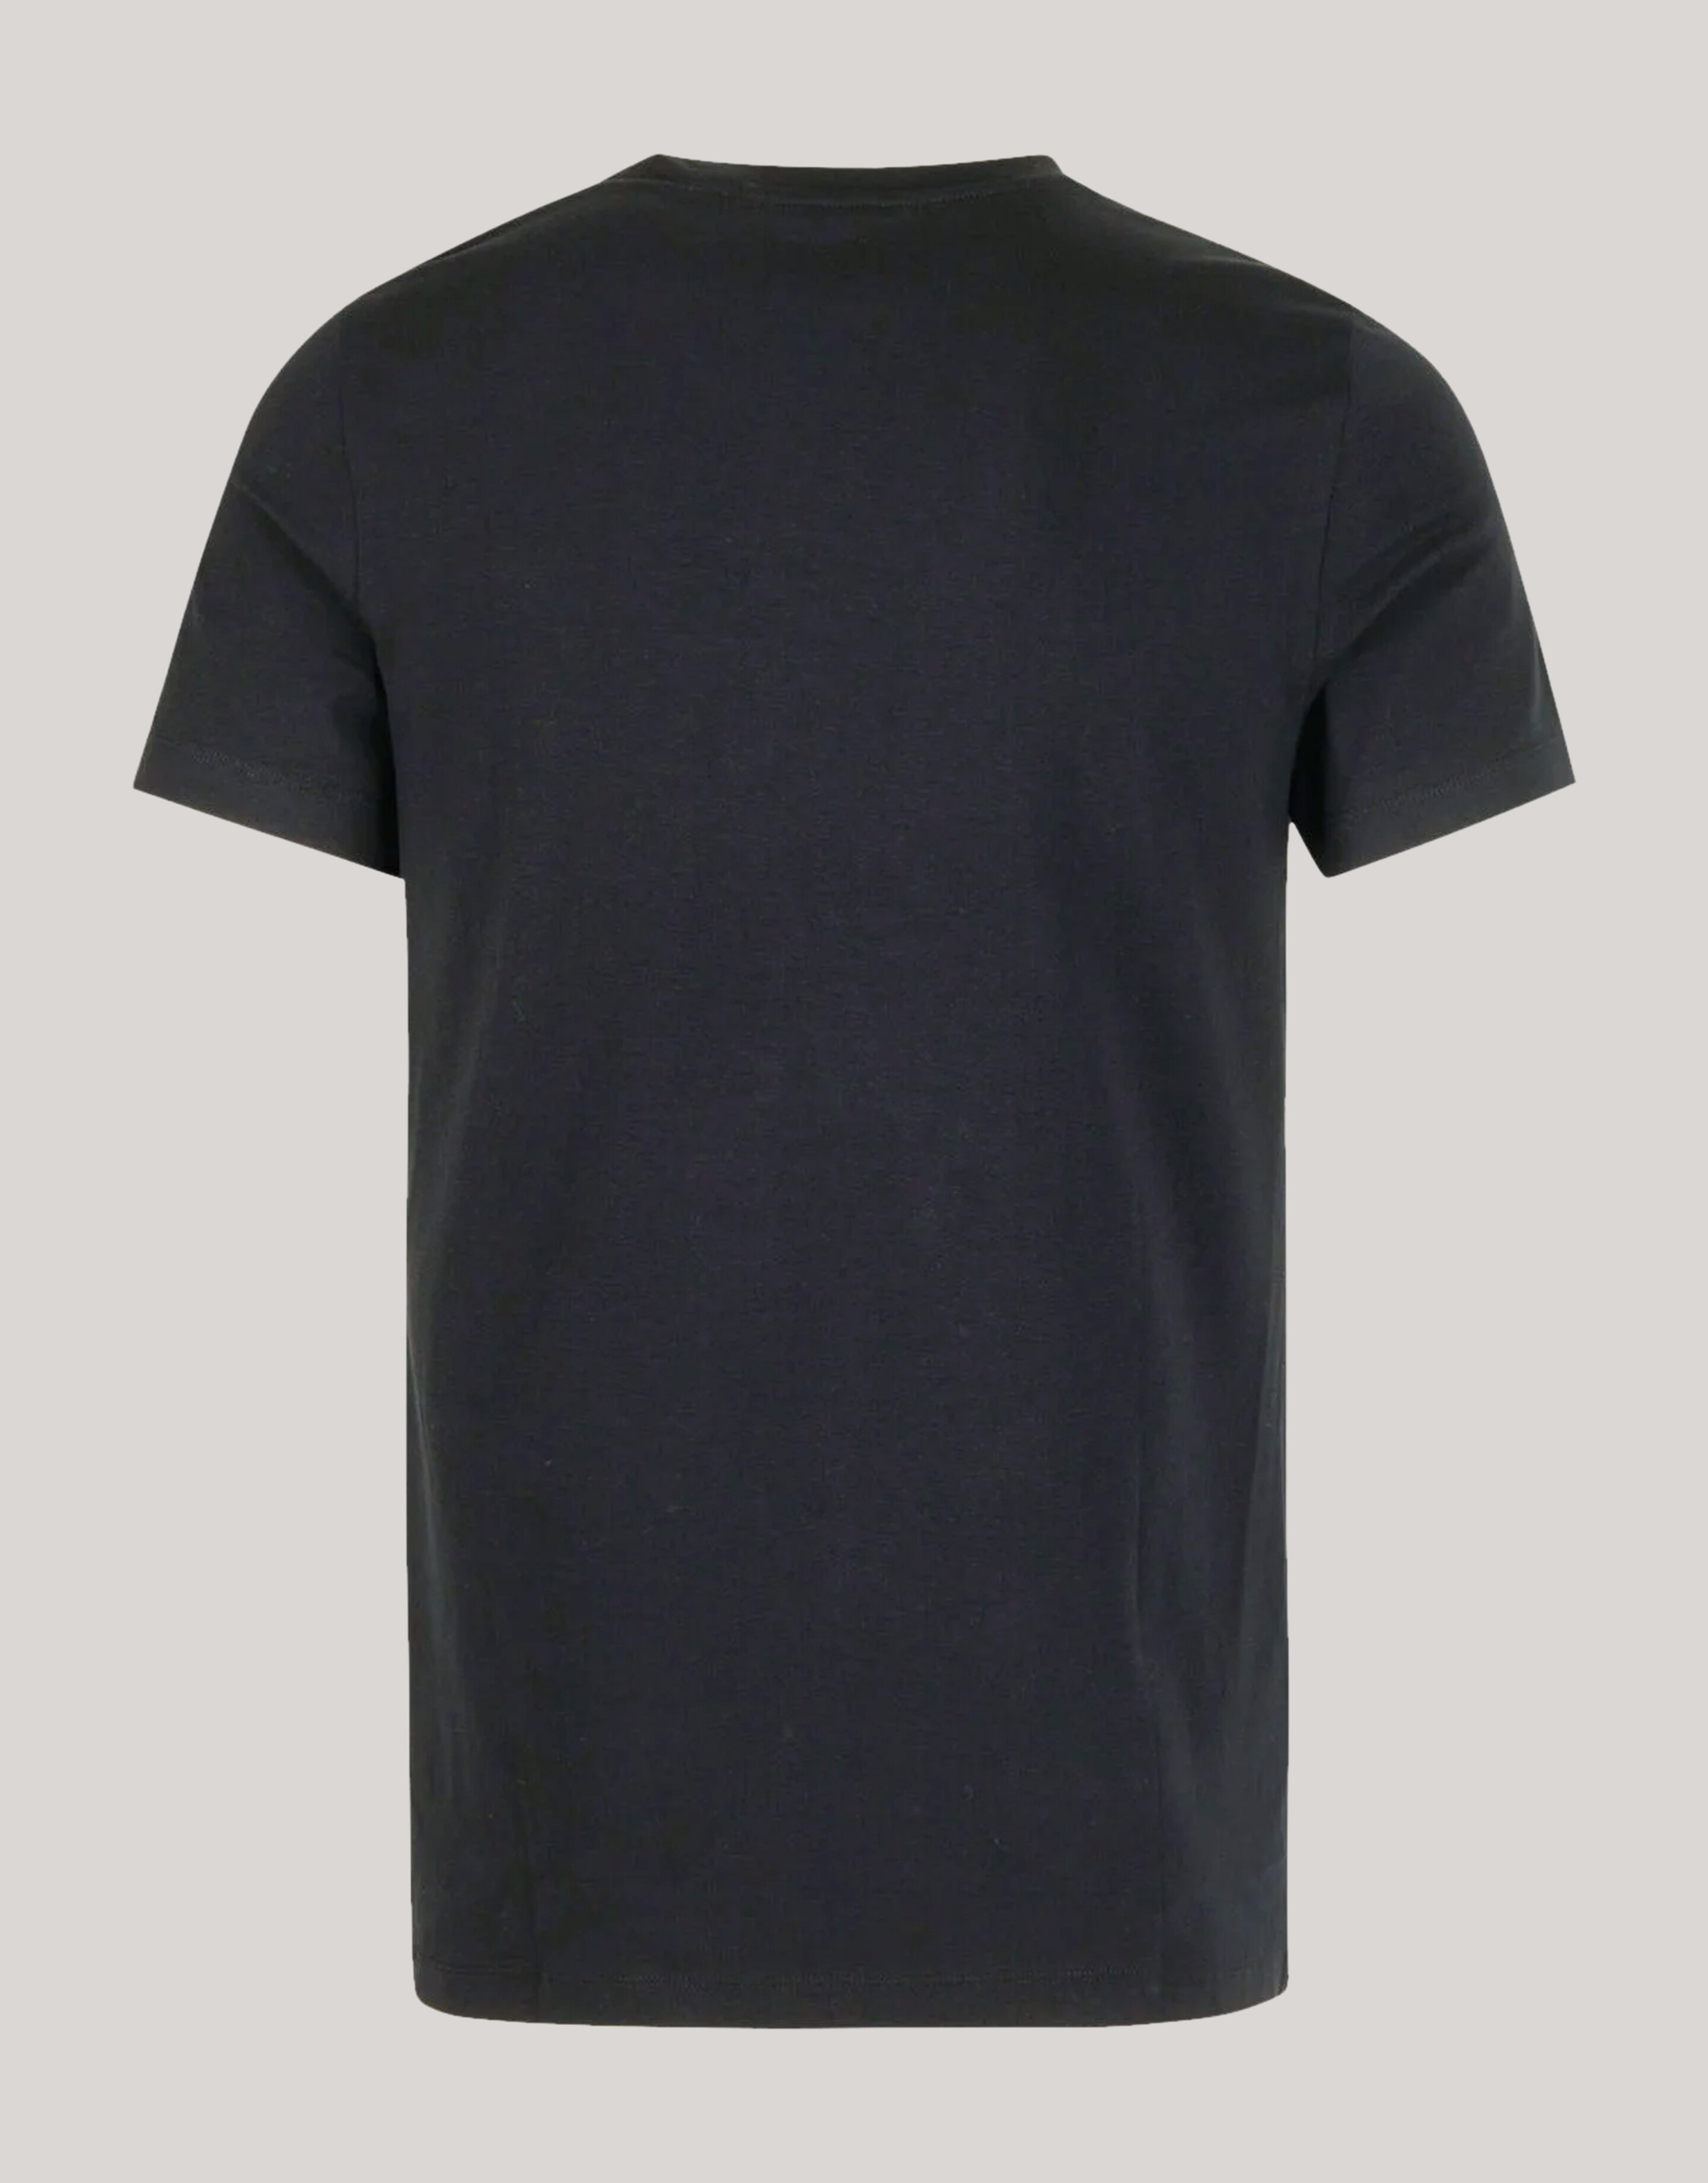 Basis T-shirt Zwart Refill